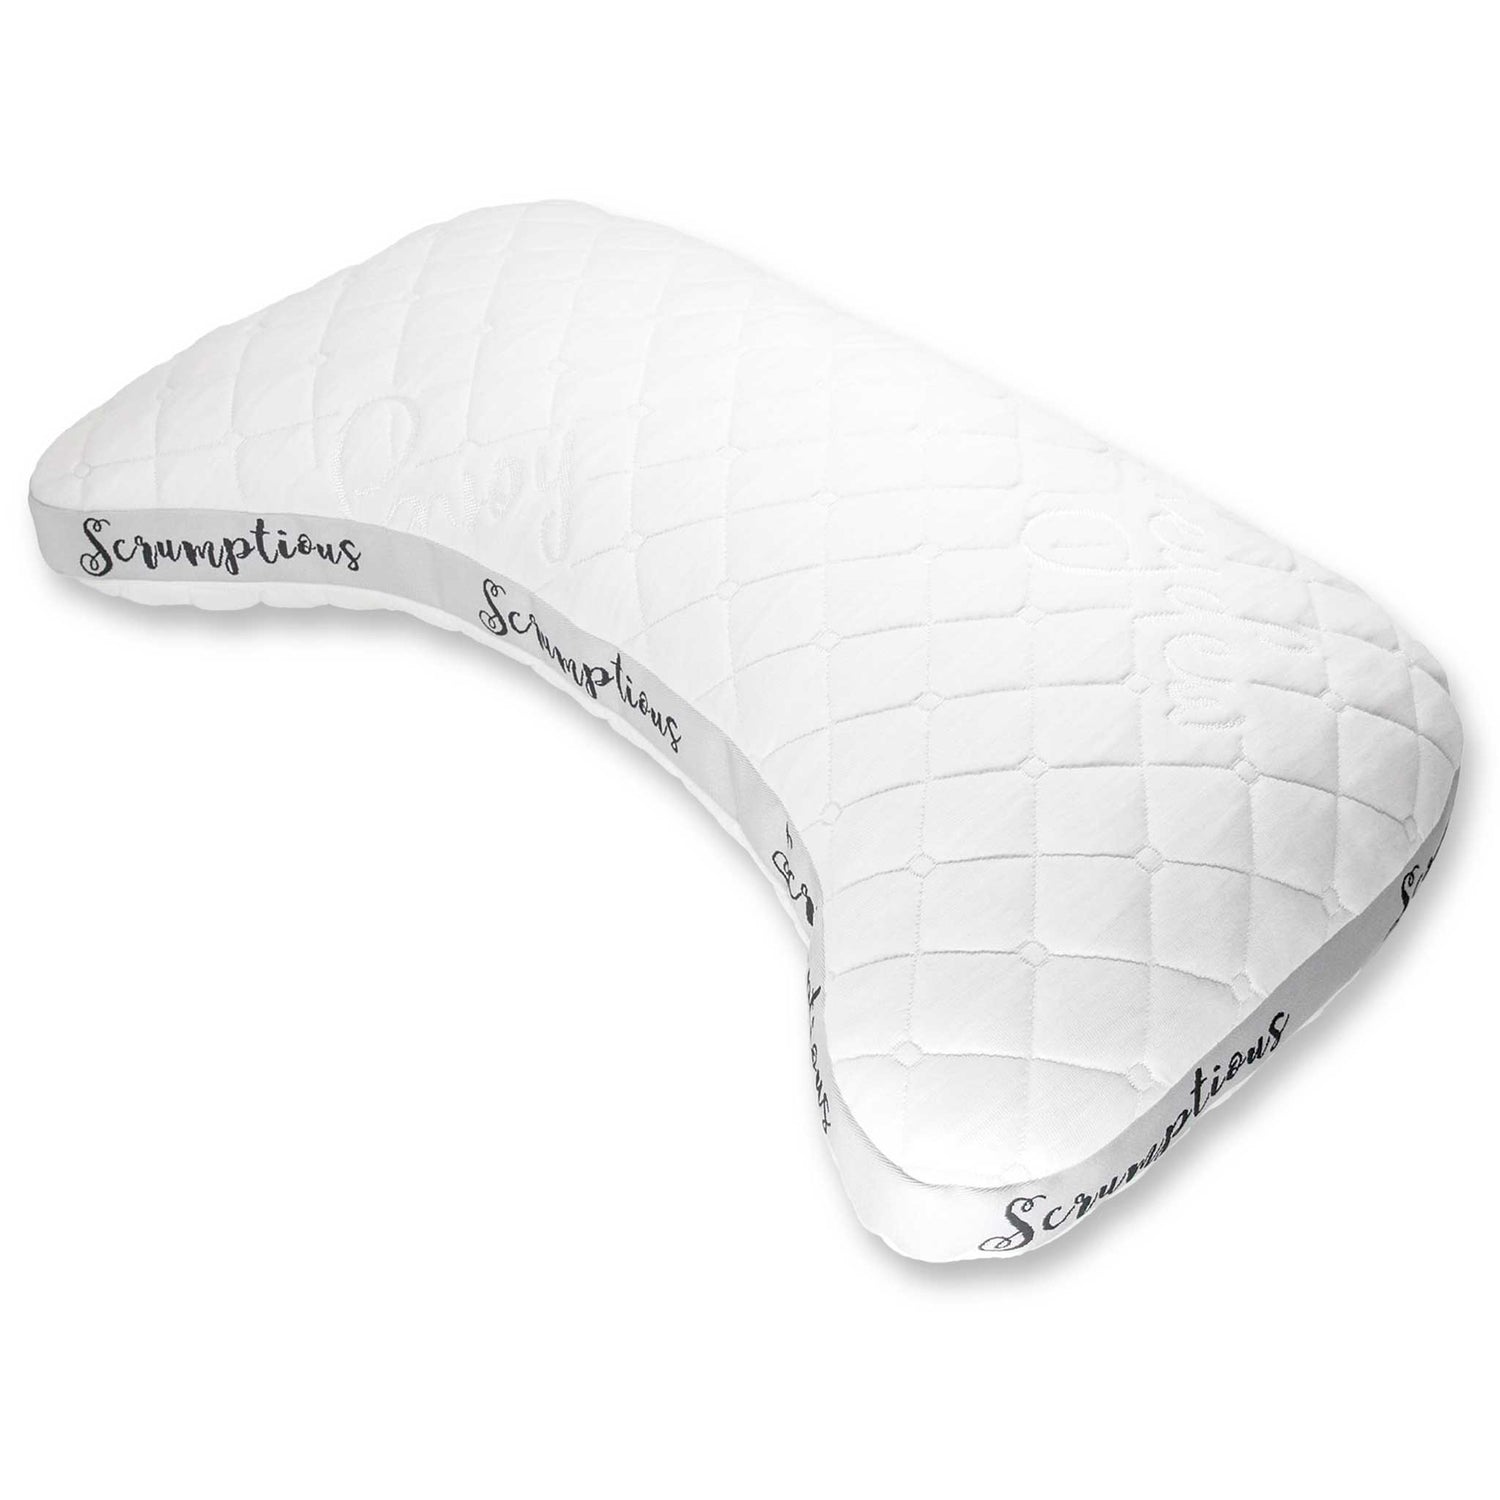 Extra Honeydew Pillow Fill